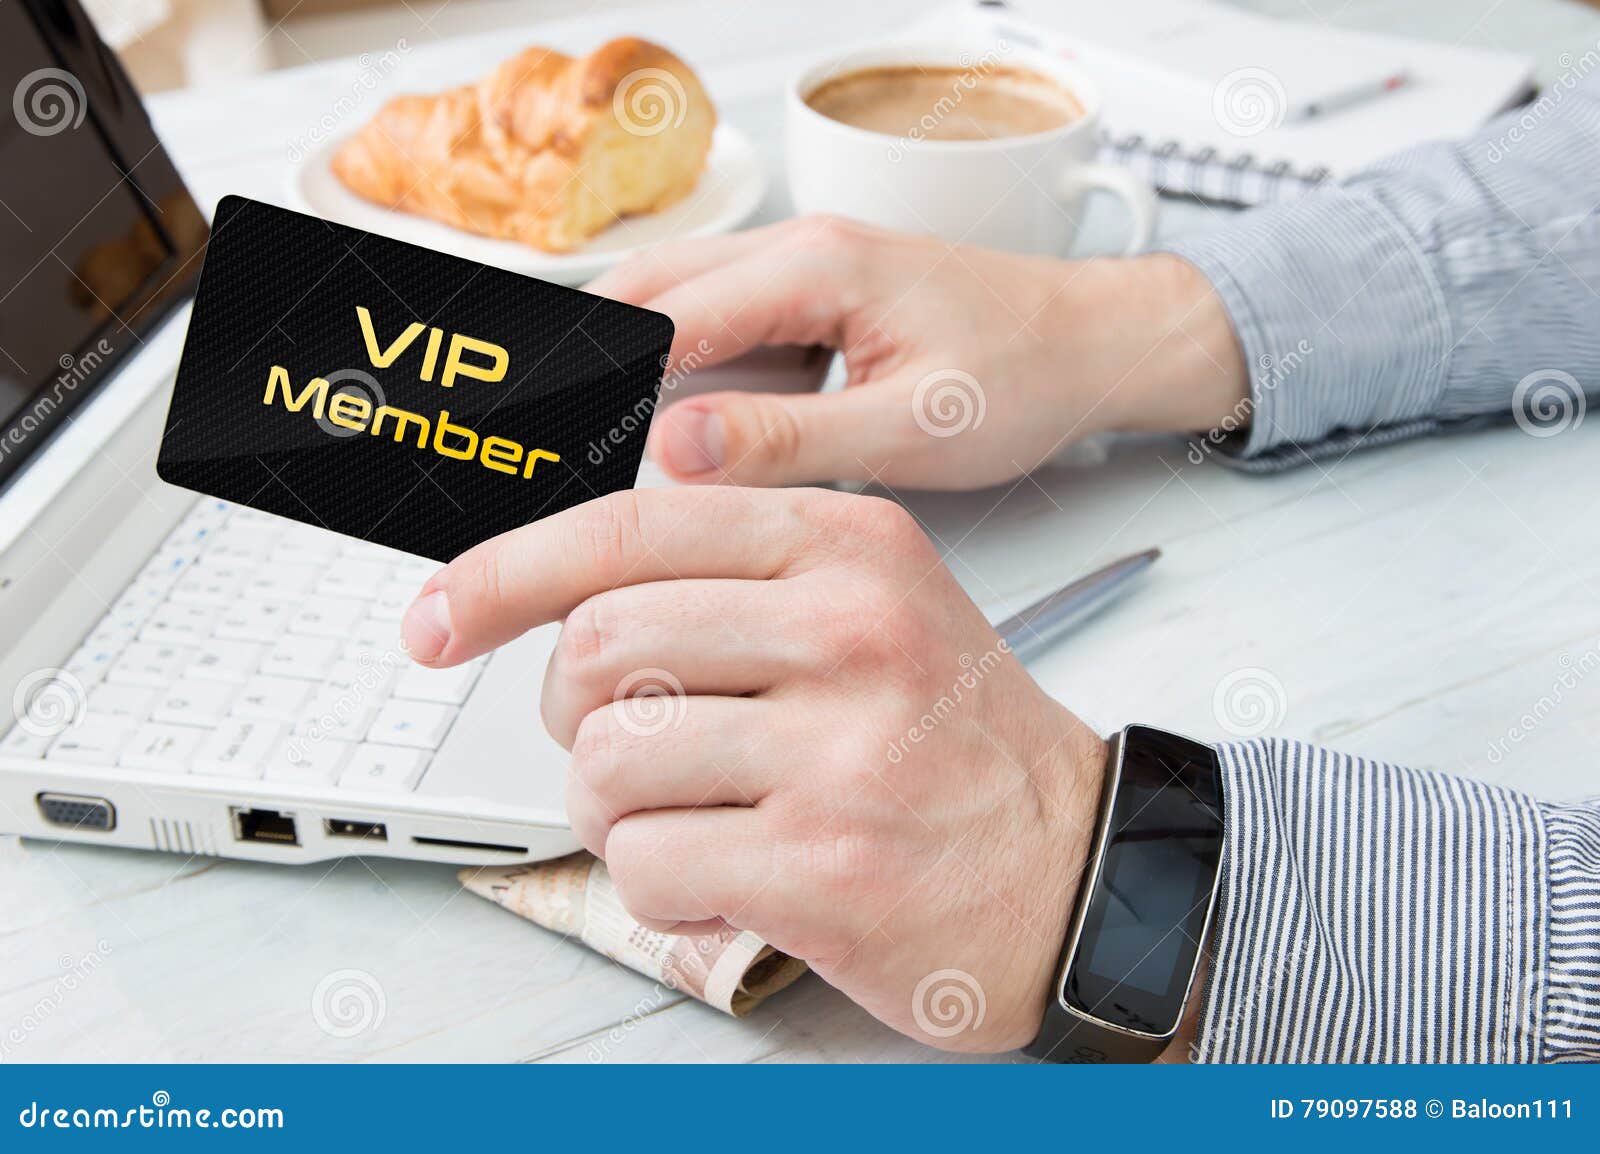 man uses vip member card